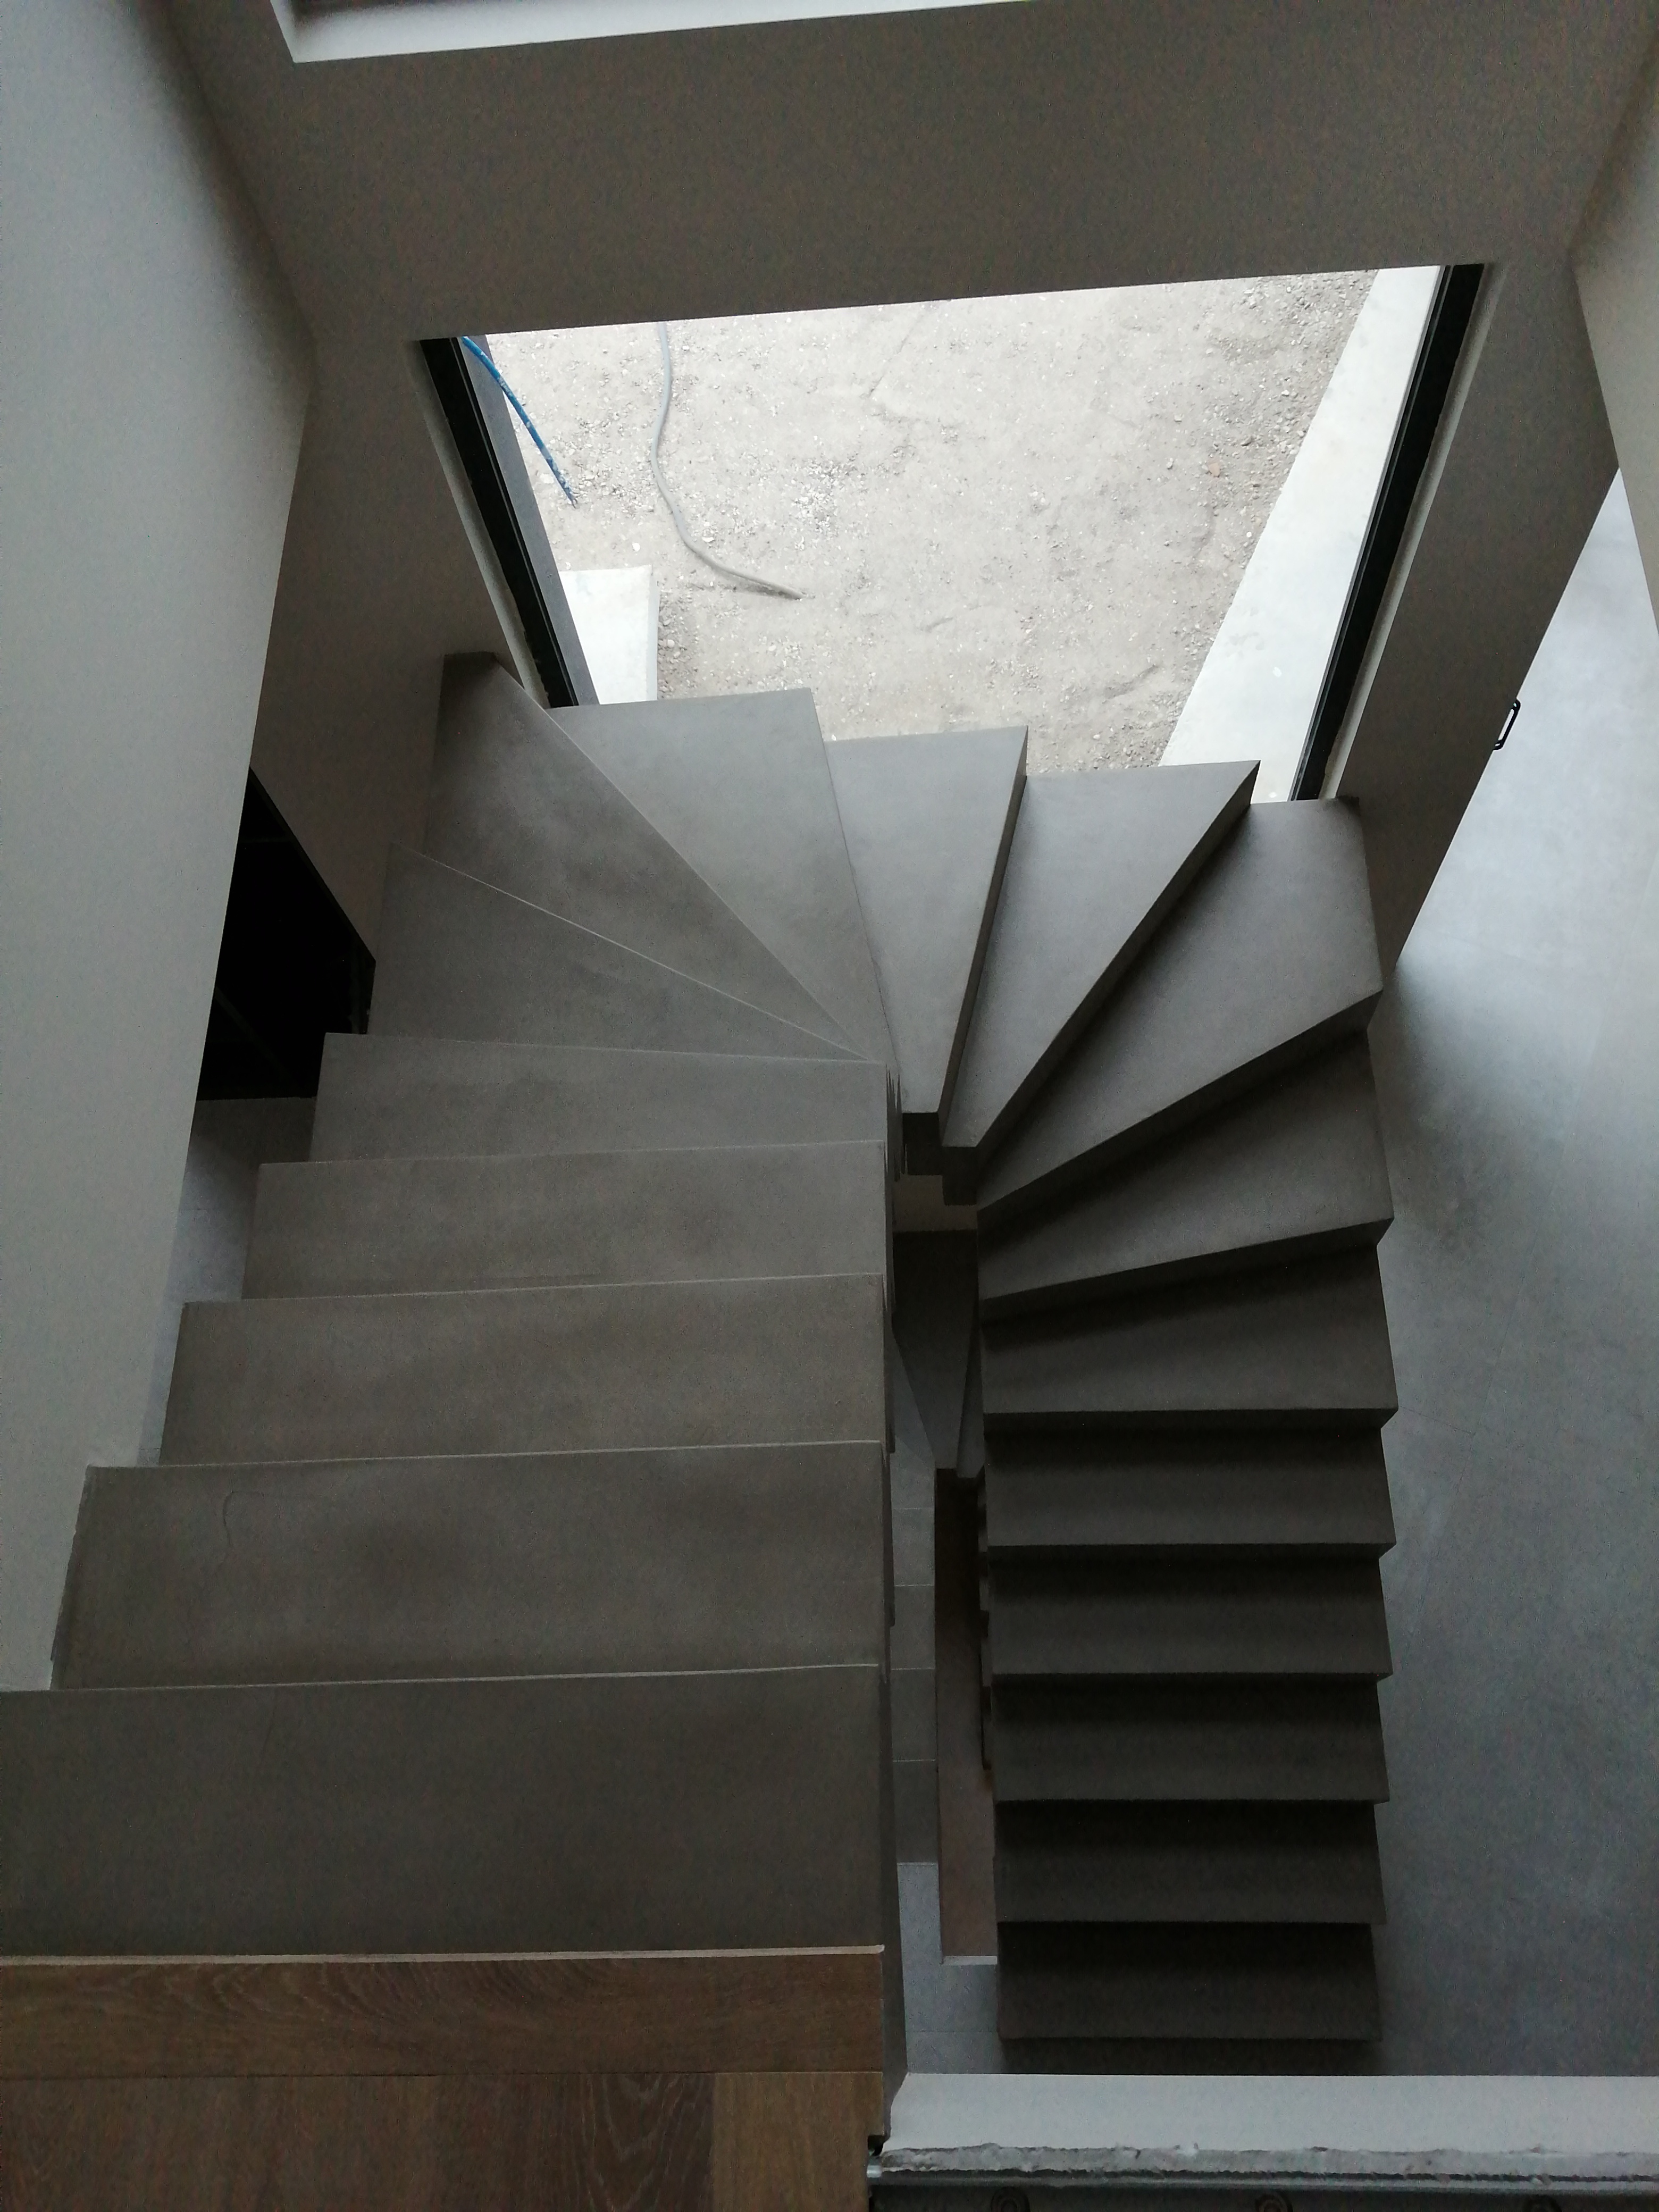 Transformation avec le béton ciré d'un escalier en béton brut en une pièce maîtresse de décoration dans la maison